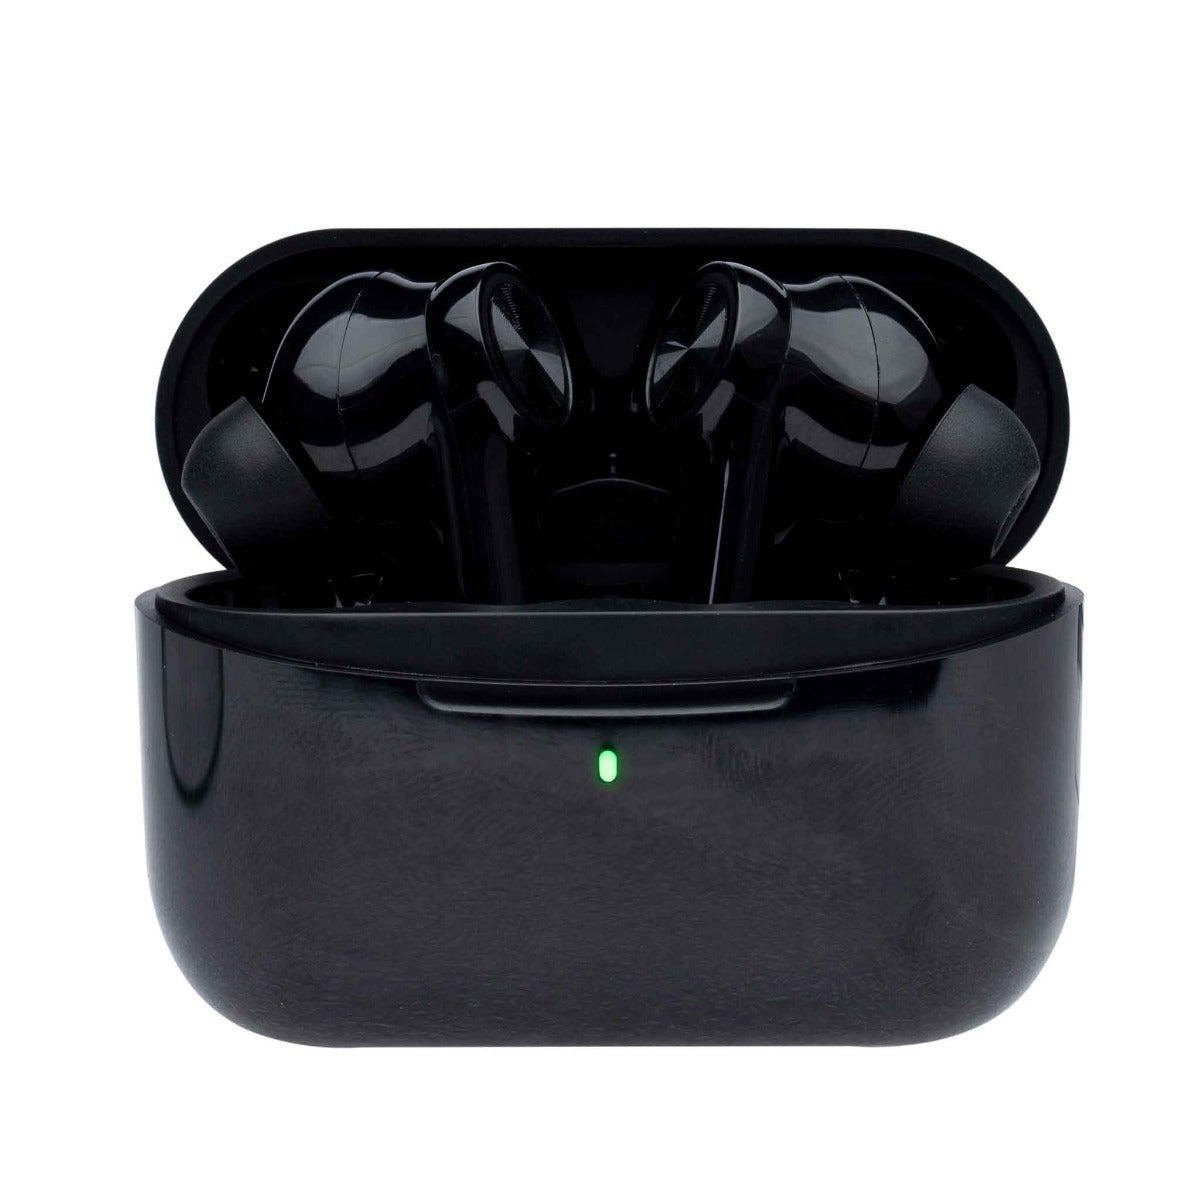 Kuurapods PRO V2 Black - auténticos auriculares inalámbricos con cancelación activa del ruido